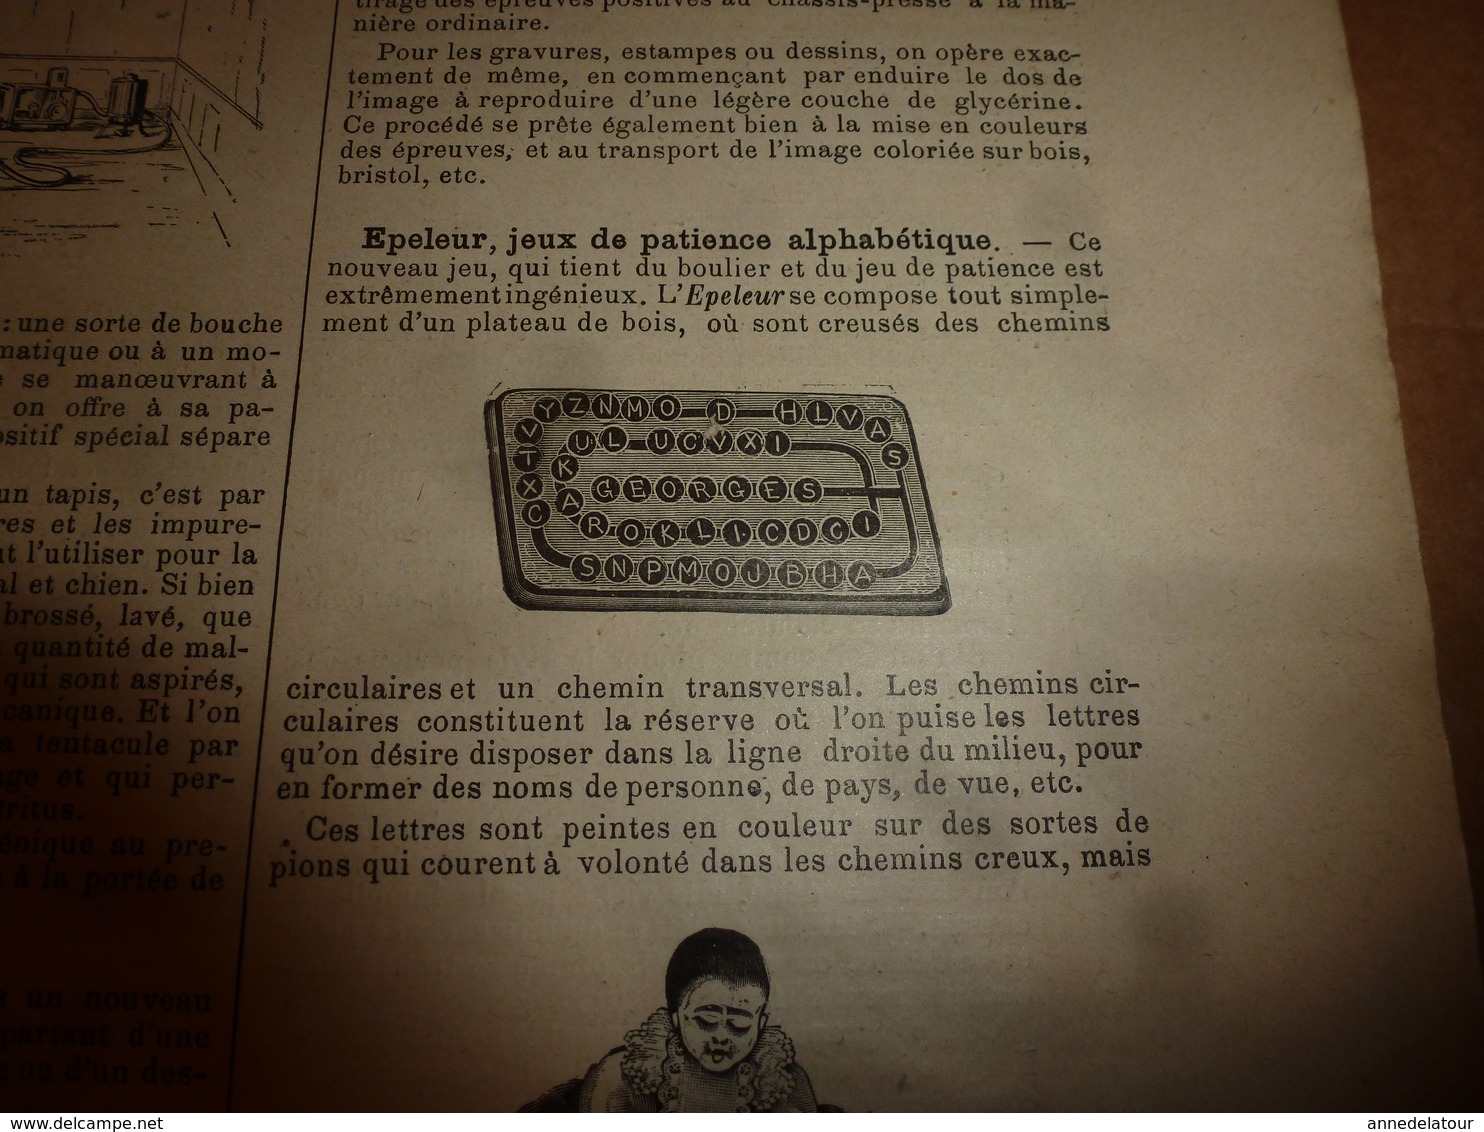 1903 LES INVENTIONS ILLUSTRÉES:Cuirassé SUFFREN;Volière-aquarium;Sécu-ascenseur;Photo-calcographie;Tirelire secrète;etc